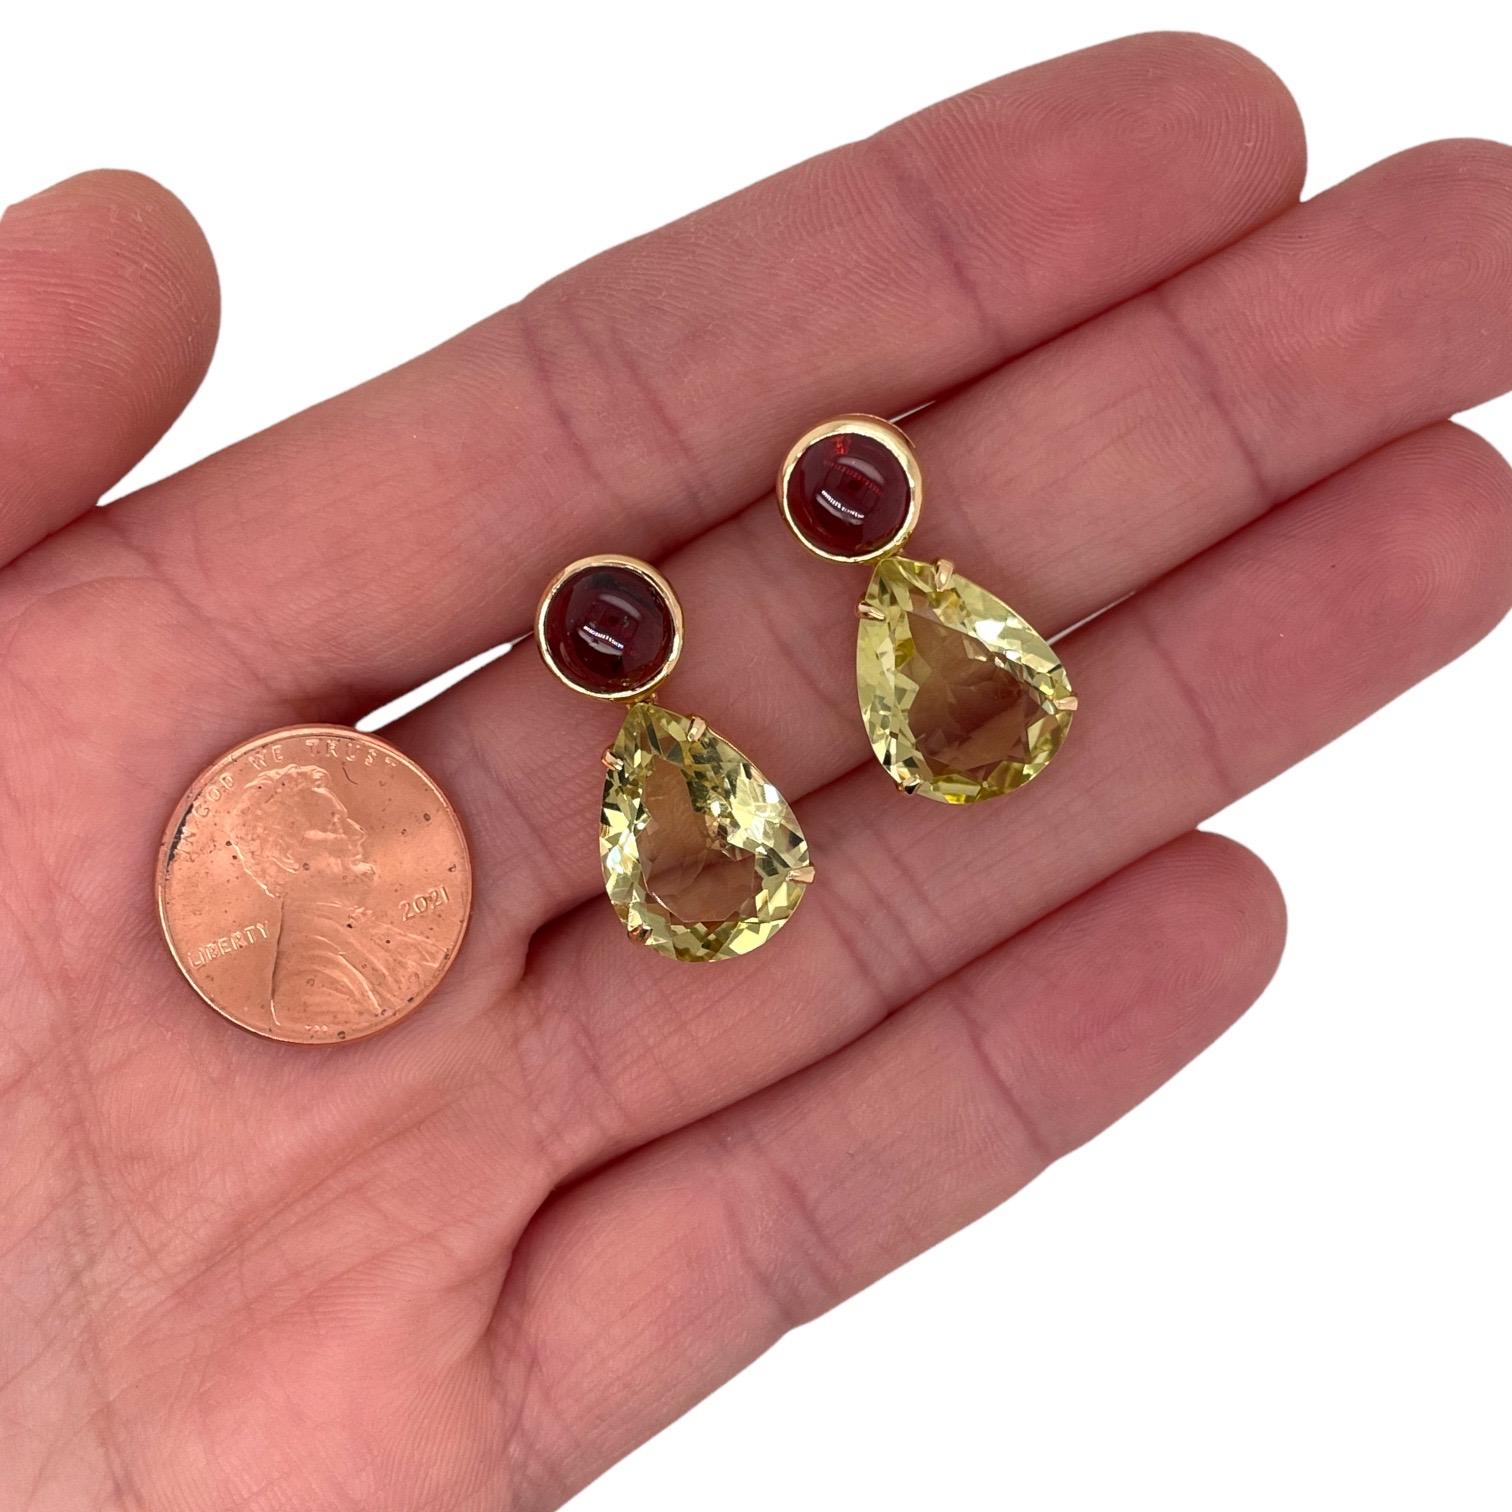 Les boucles d'oreilles contiennent 2 quartz citron en forme de poire, 12x15mm et 2 grenats cabochons ronds, 7mm pesant un total d'environ 7.50cts Les pierres sont montées en or jaune 18k en serti clos et en chaton pesant un total de 6.43grammes. Les